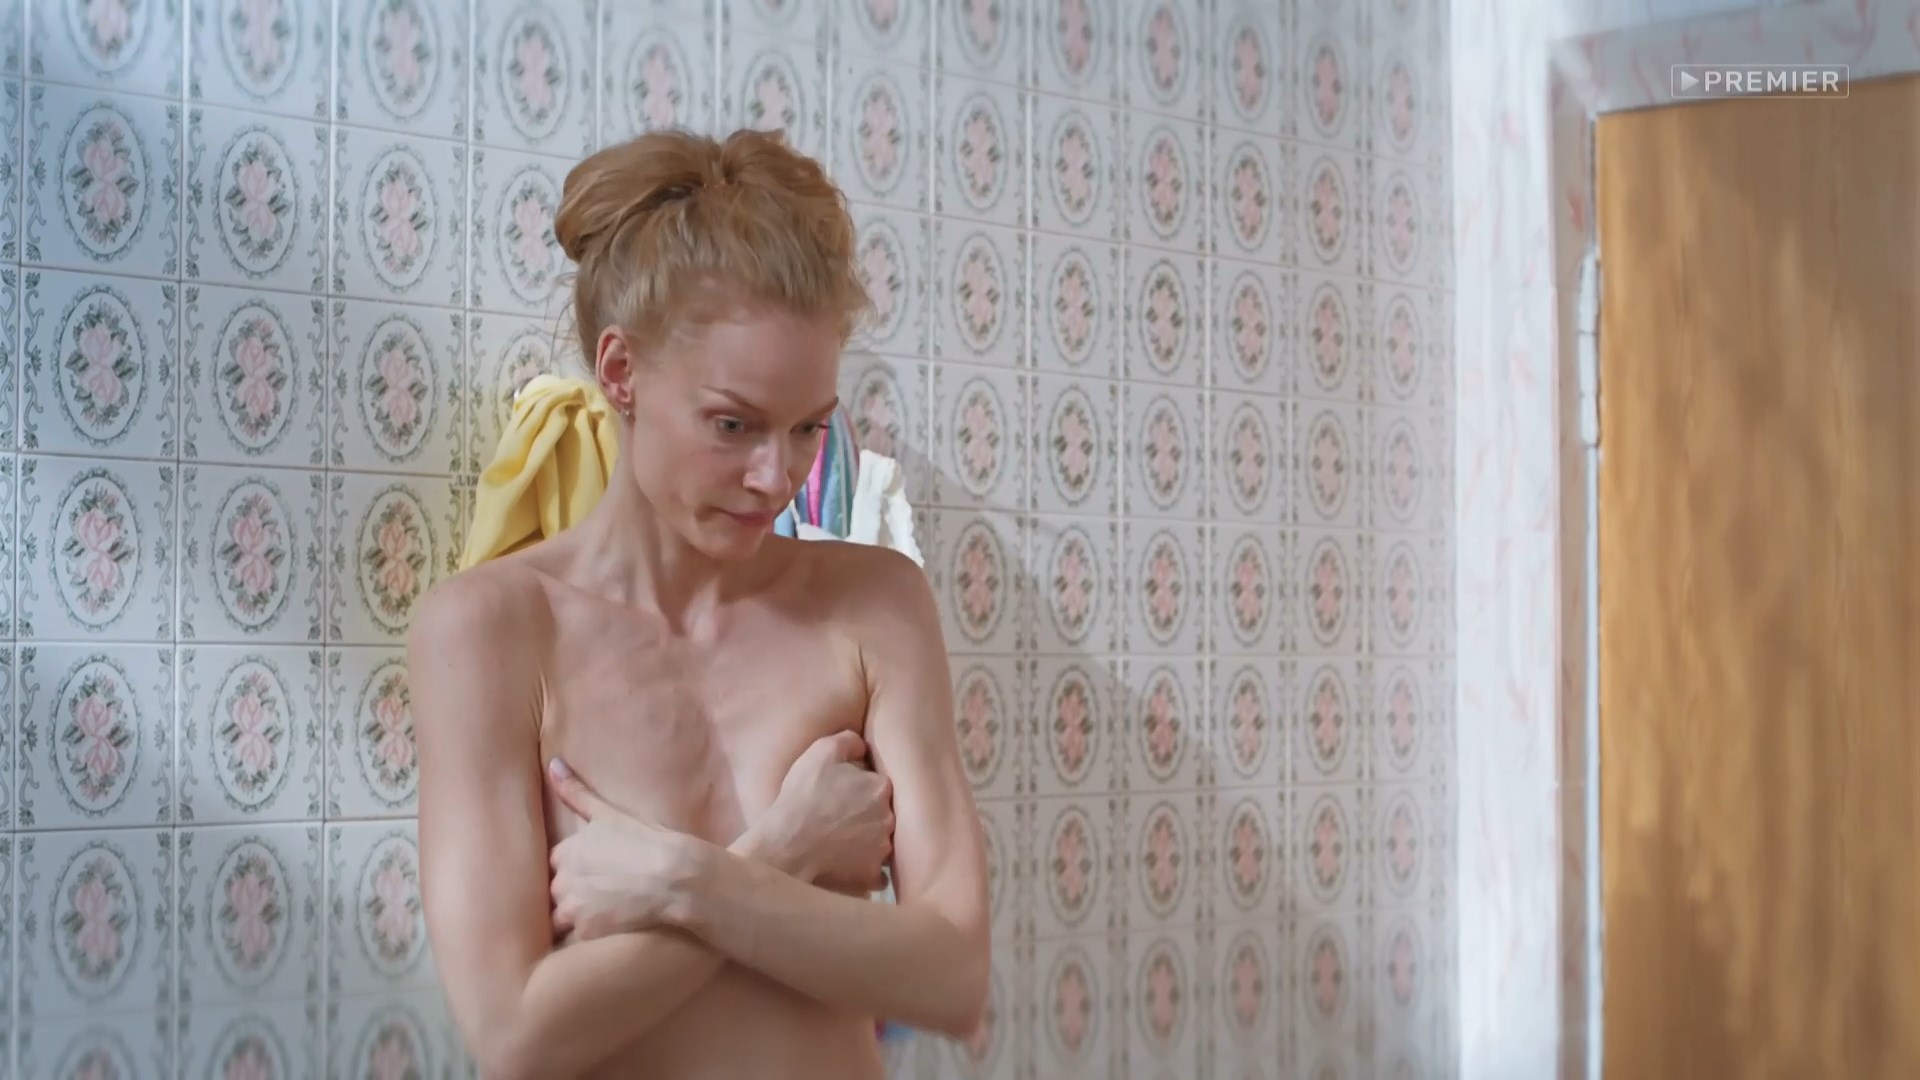 Svetlana khodchenkova naked